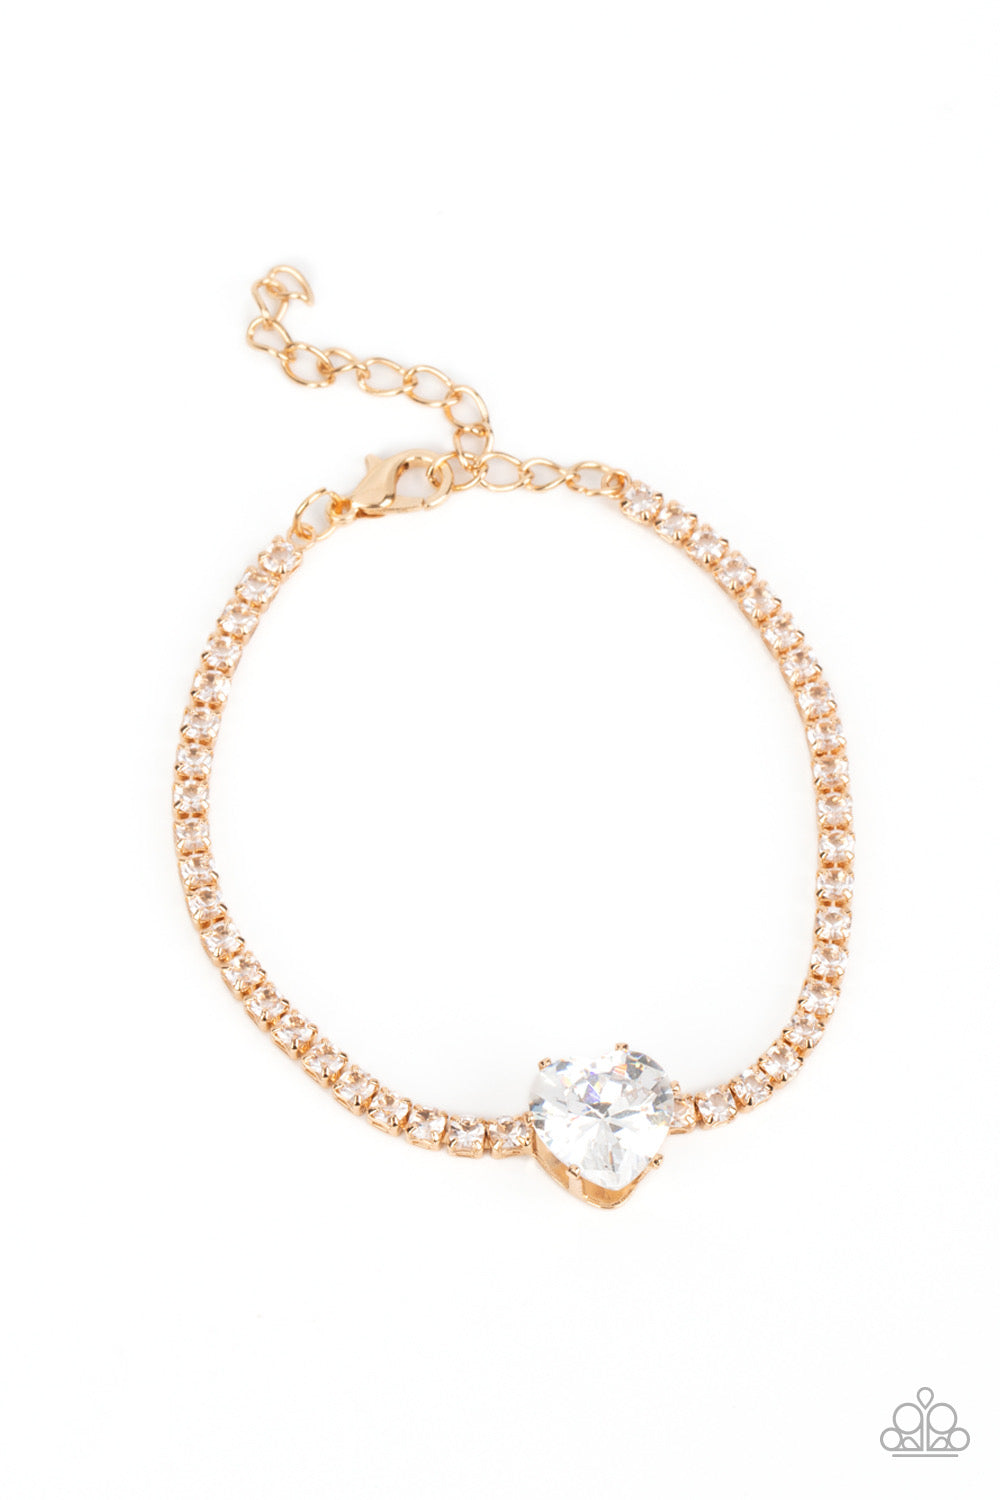 Paparazzi 2pc Set: Flirty Fiancé - Gold Choker Necklace & Bedazzled Beauty - Gold Bracelet 